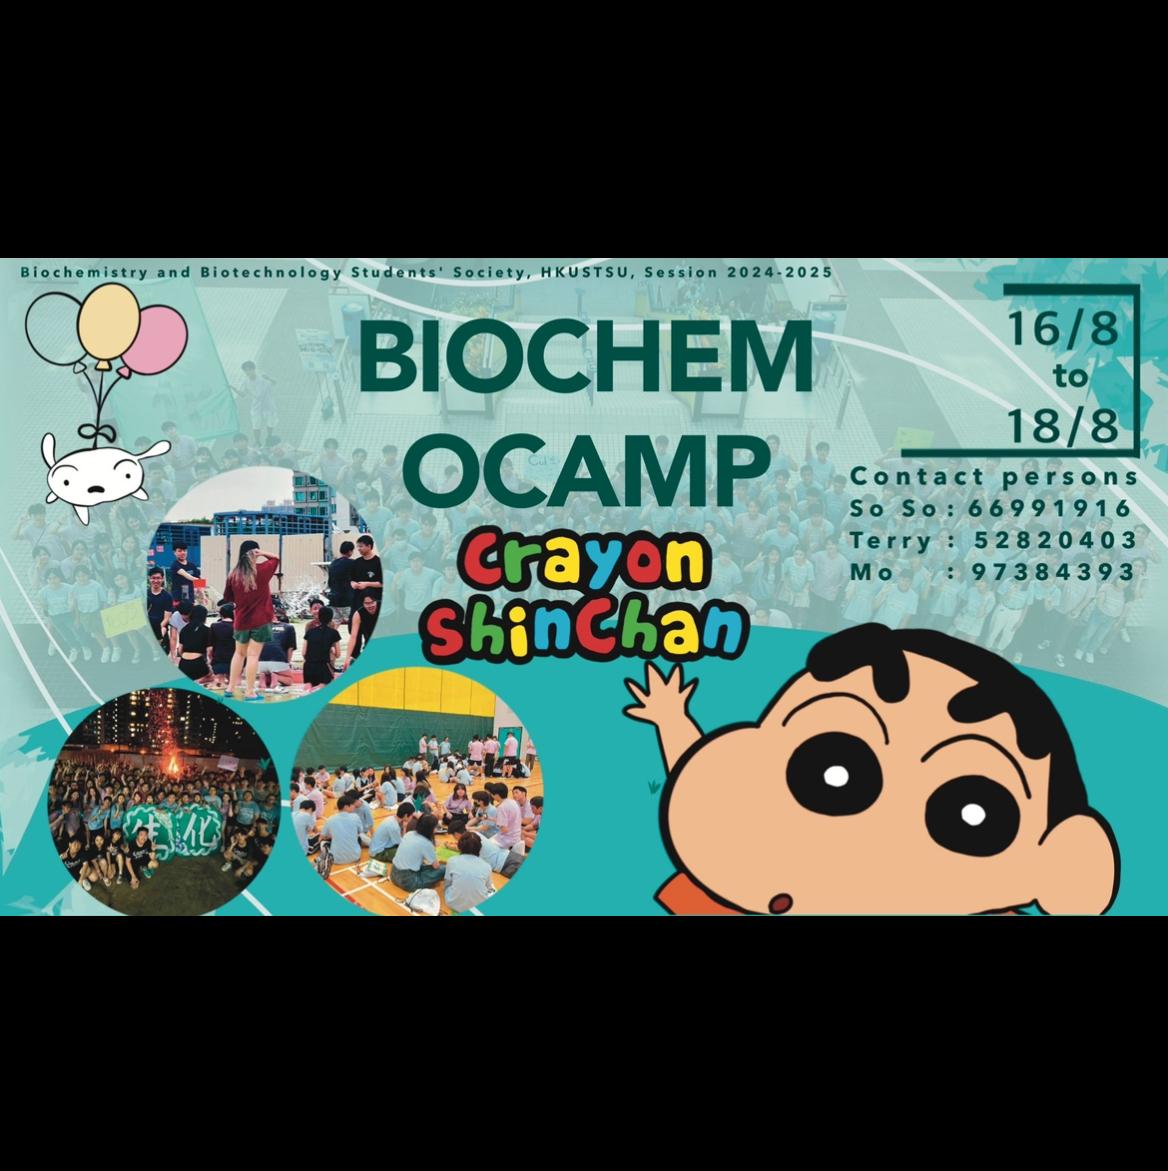 Biochemistry and Biotechnology Students’ Society